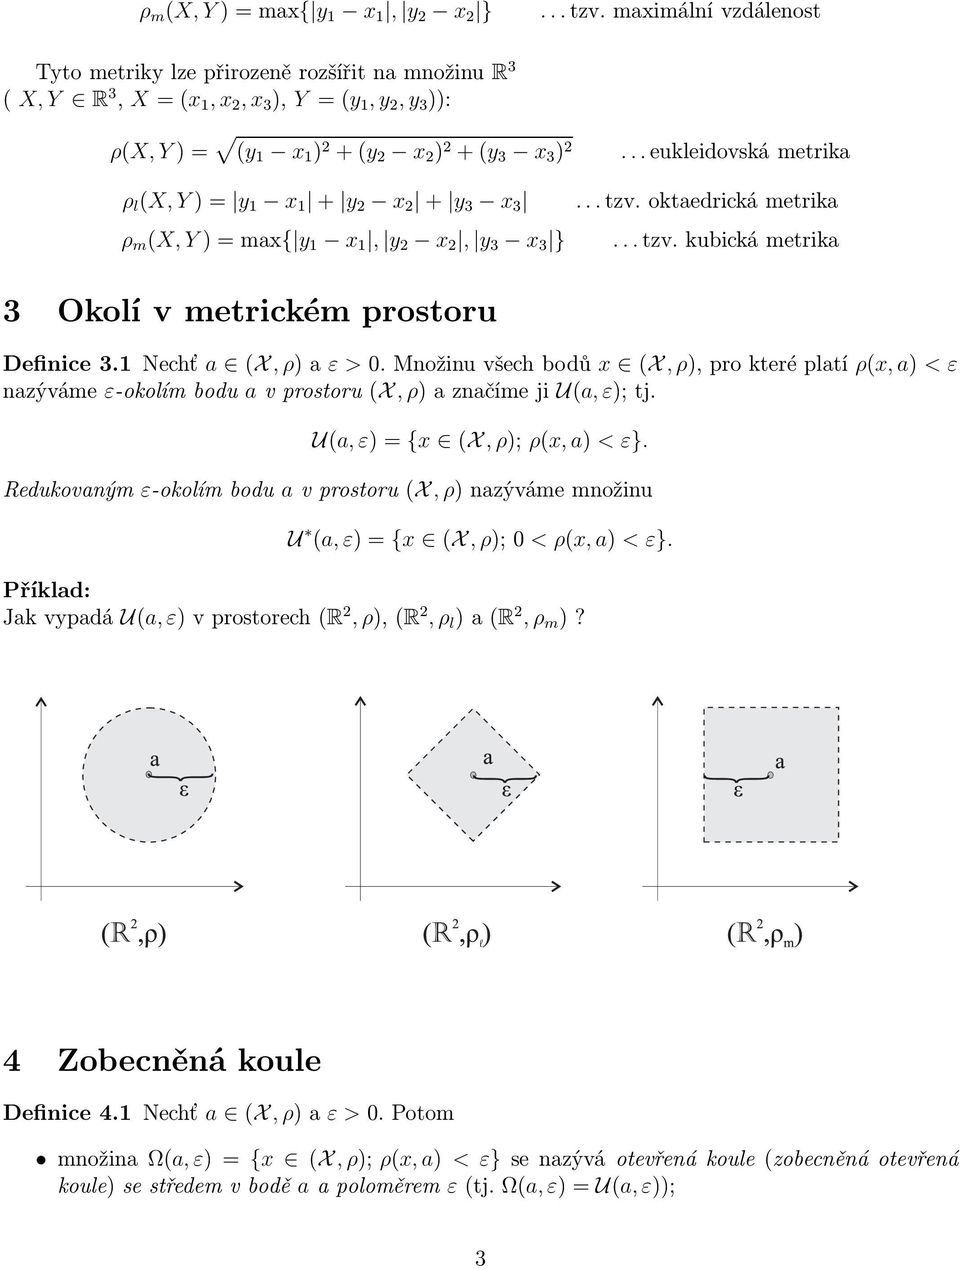 y 3 x 3 ρ m (X, Y)=max{ y 1 x 1, y 2 x 2, y 3 x 3 }...eukleidovskámetrika...tzv.oktaedrickámetrika...tzv.kubickámetrika 3 Okolí v metrickém prostoru Definice3.1Nechť a (X, ρ)aε >0.